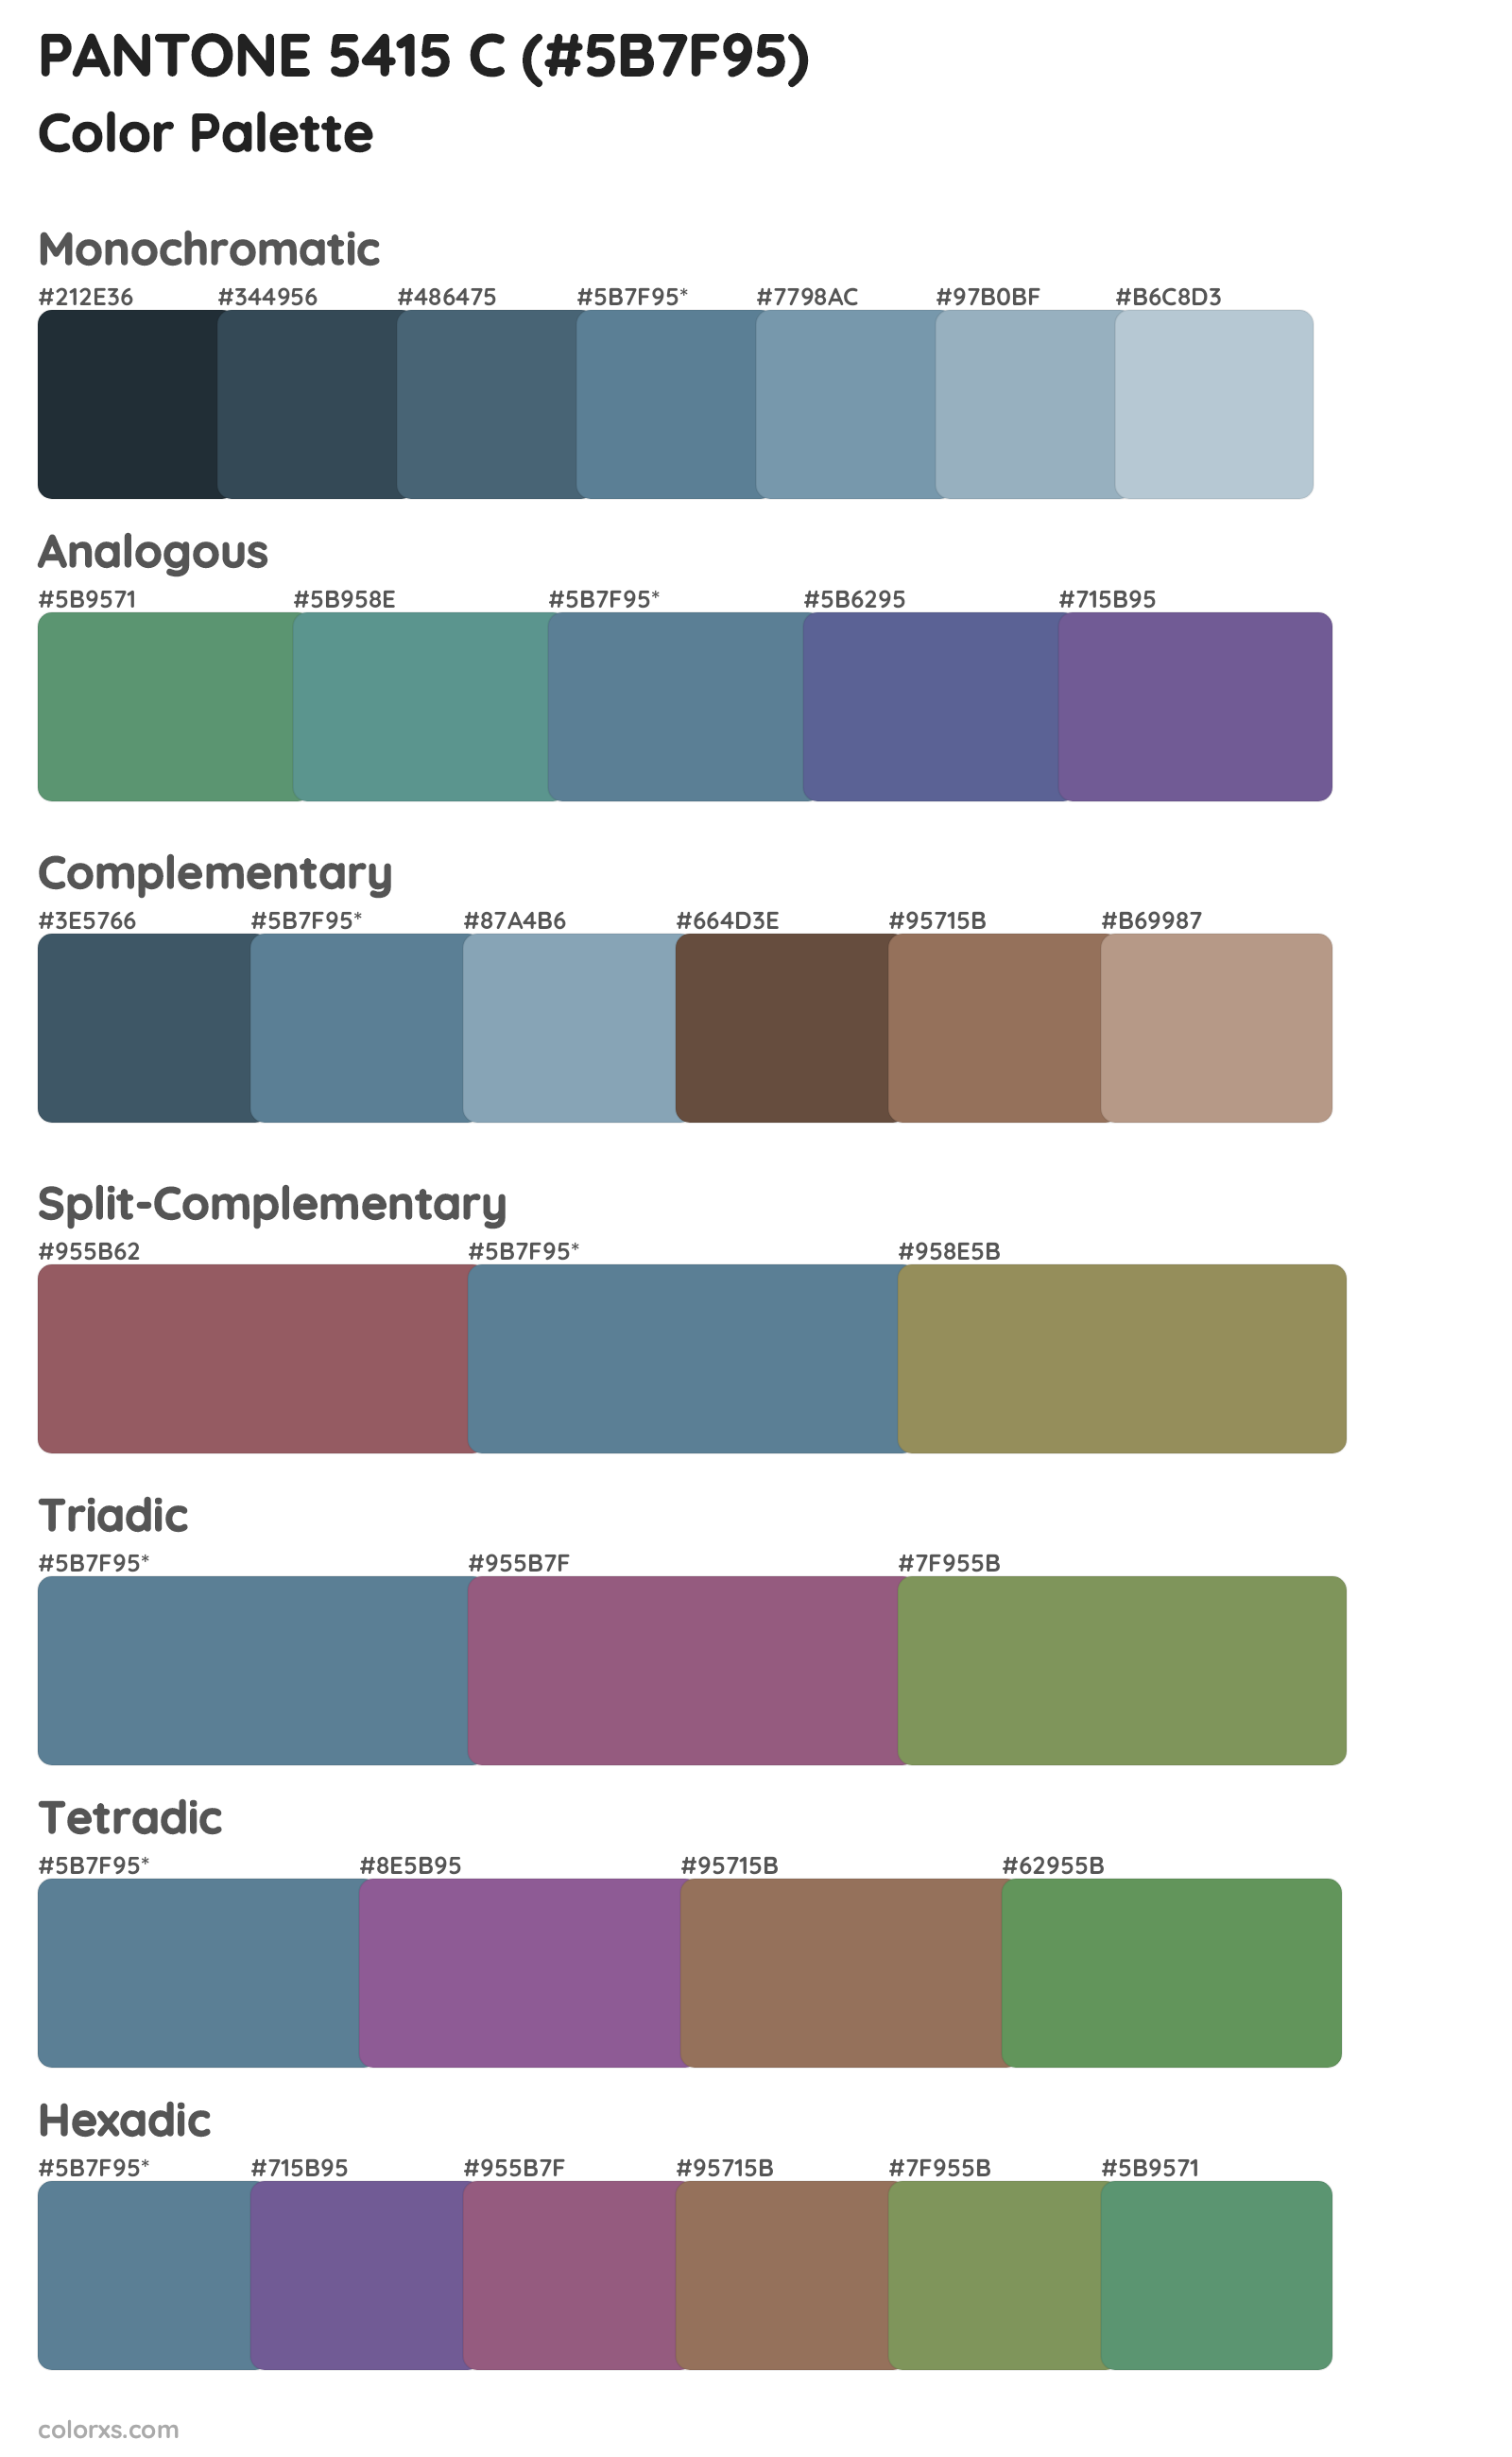 PANTONE 5415 C Color Scheme Palettes